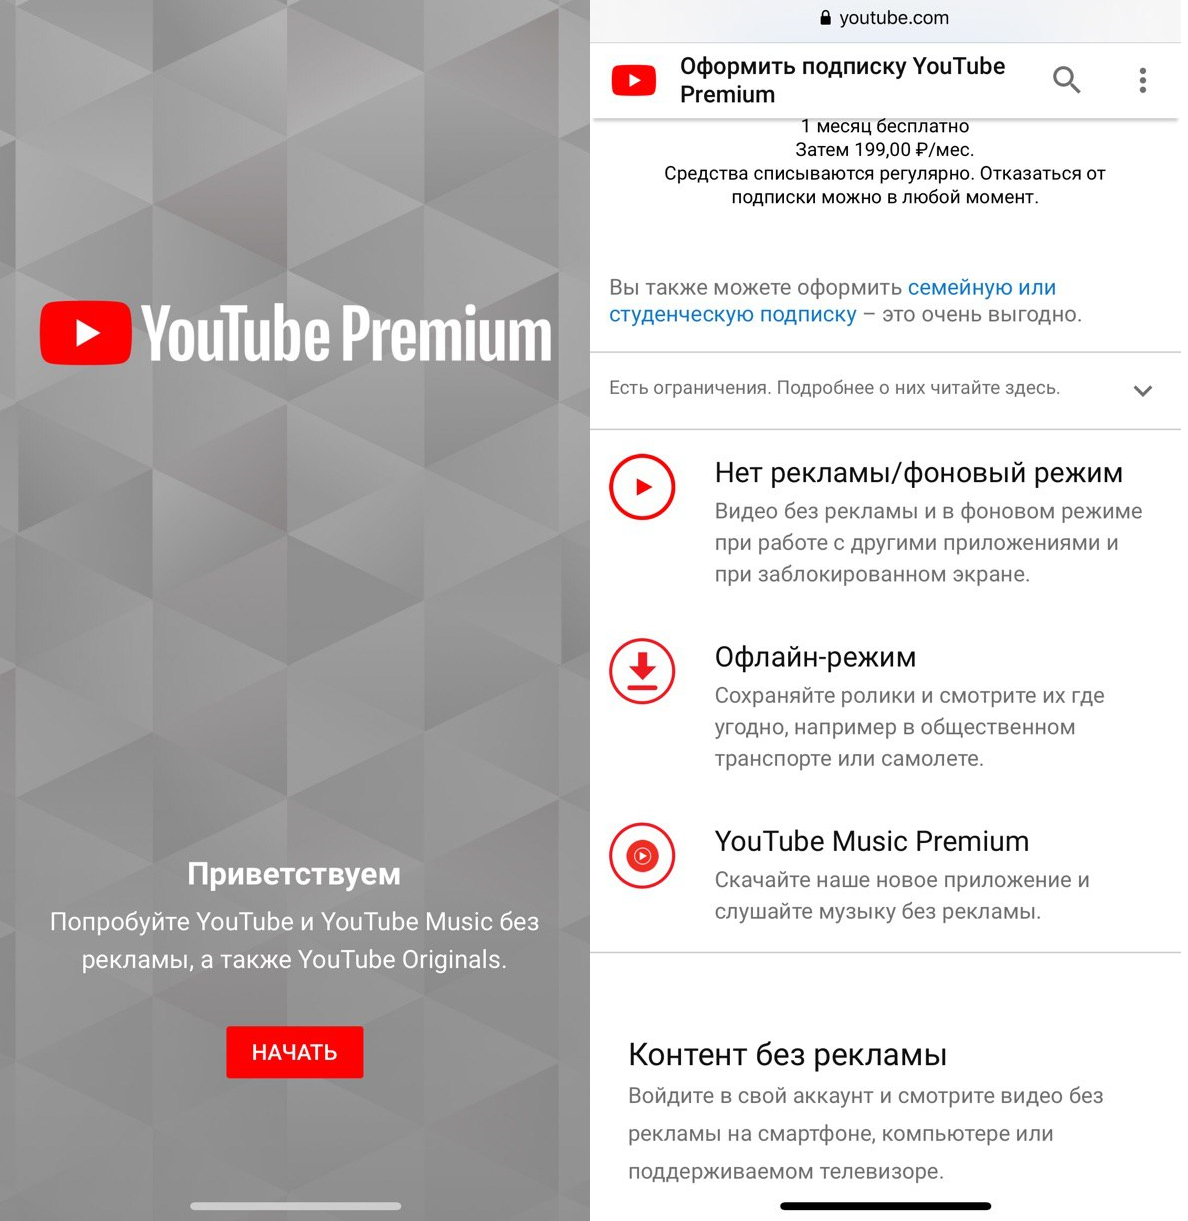 Ютуб премиум без рекламы на андроид последняя. Youtube Premium. Подписка ютуб премиум. Преимущества премиум подписки. Как оформить подписку на ютуб премиум.